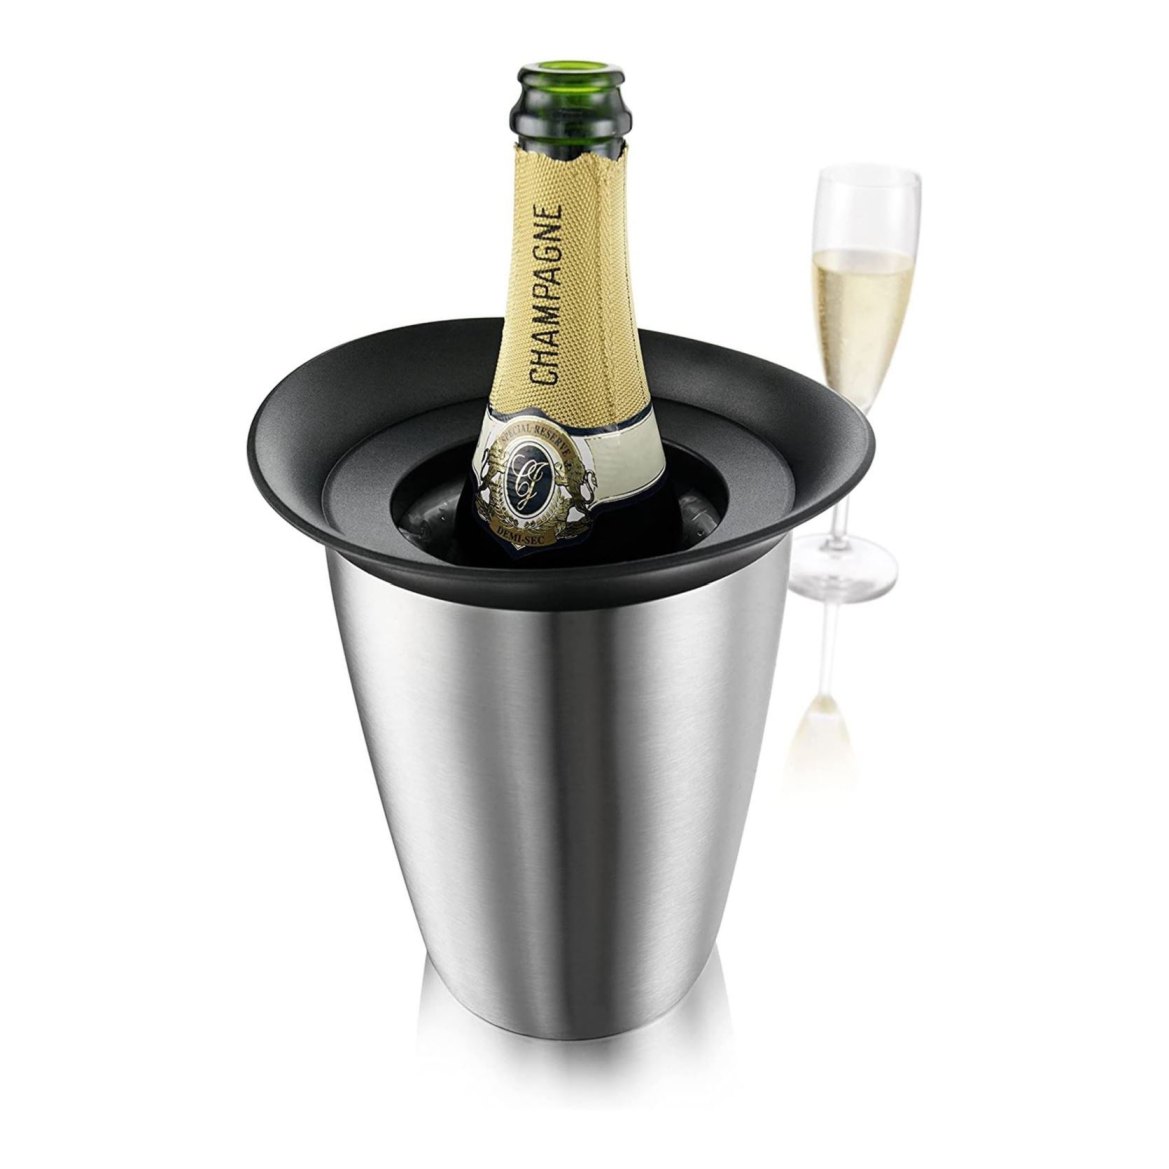 IIC Chladič na šampaňské Active Cooler nerezová ocel - Vacu Vin